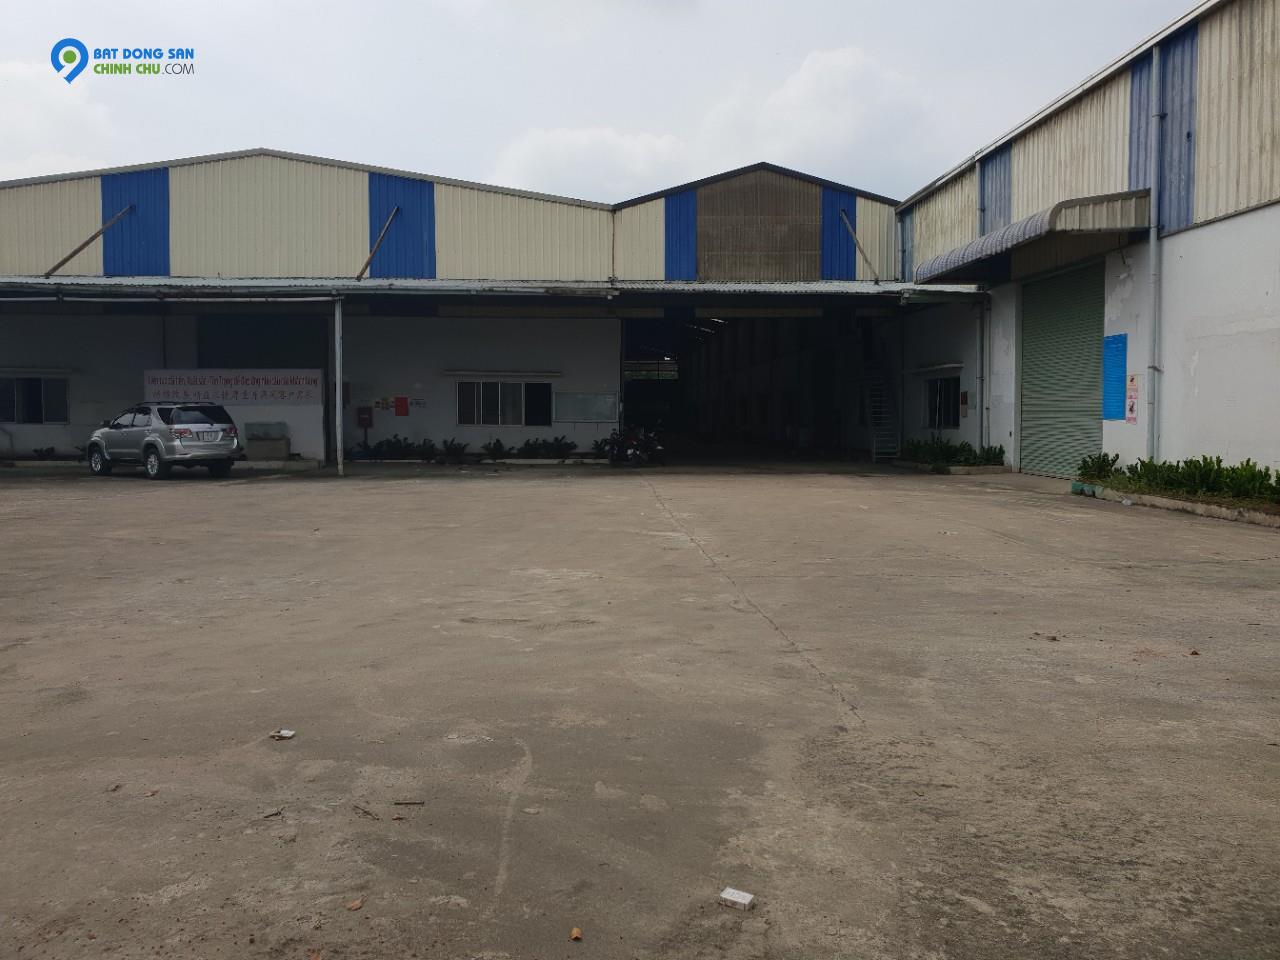 Bán 1.5ha đất KCN Tân Quang, Văn Lâm, Hưng Yên. Sẵn 5000m2 nhà xưởng.